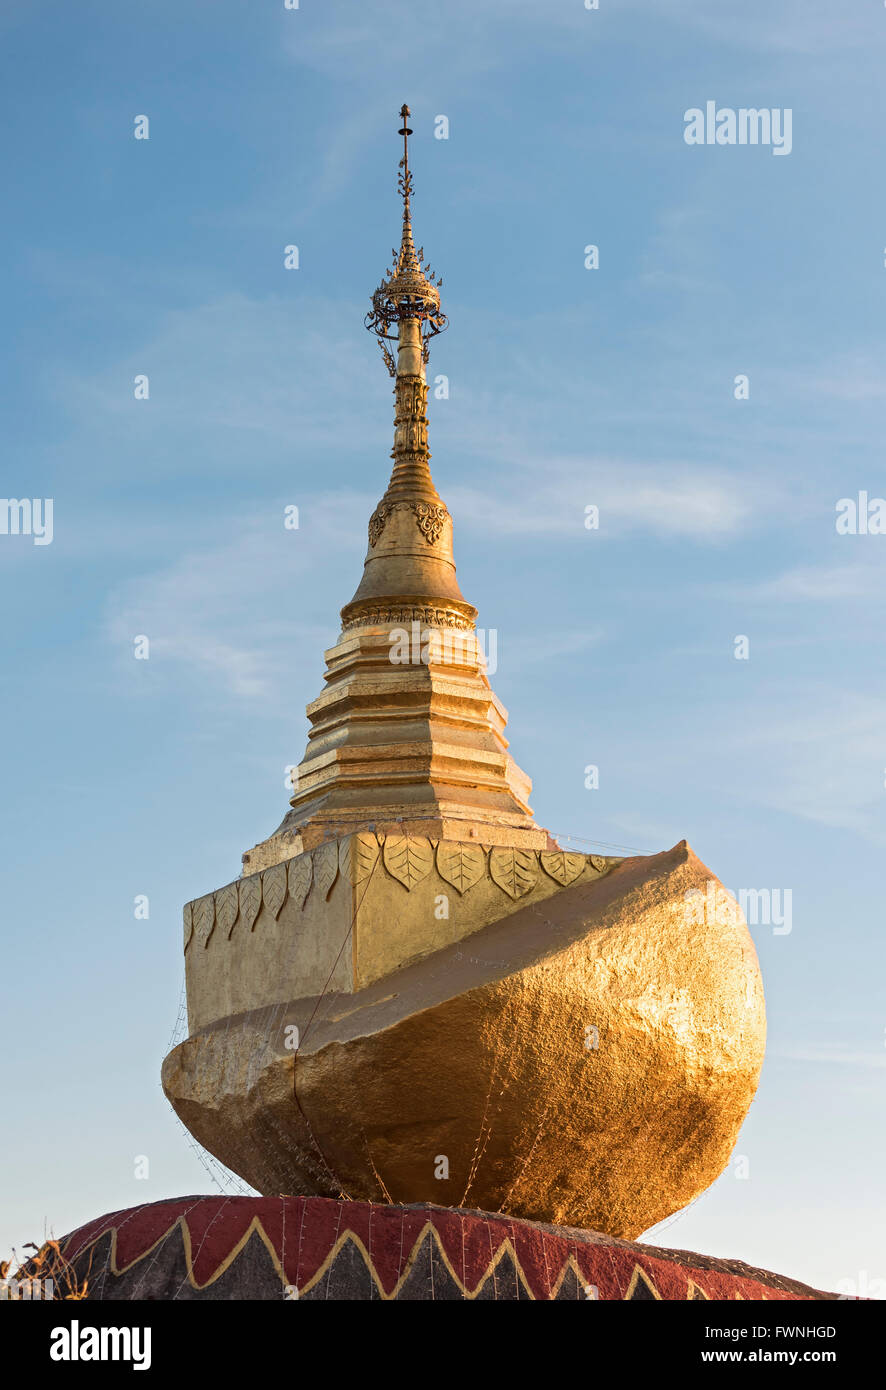 Kyaukthanban Stupa (Stone boat pagoda) on Mt. Kyaiktiyo, Burma, Myanmar Stock Photo